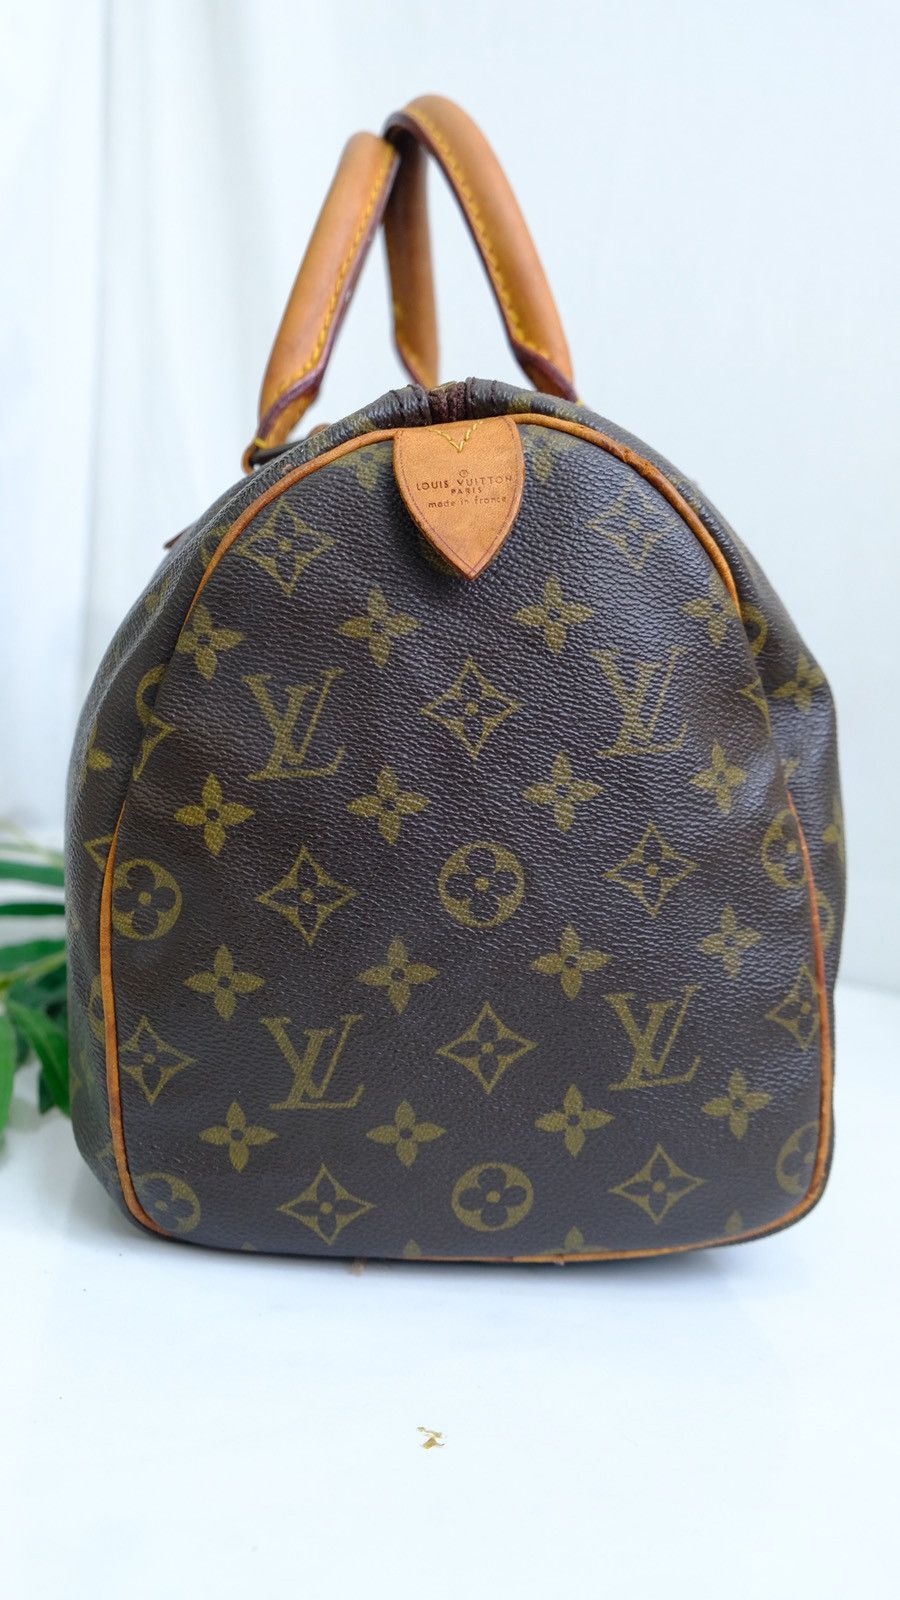 Authentic vintage Louis Vuitton speedy 30 bag - 2